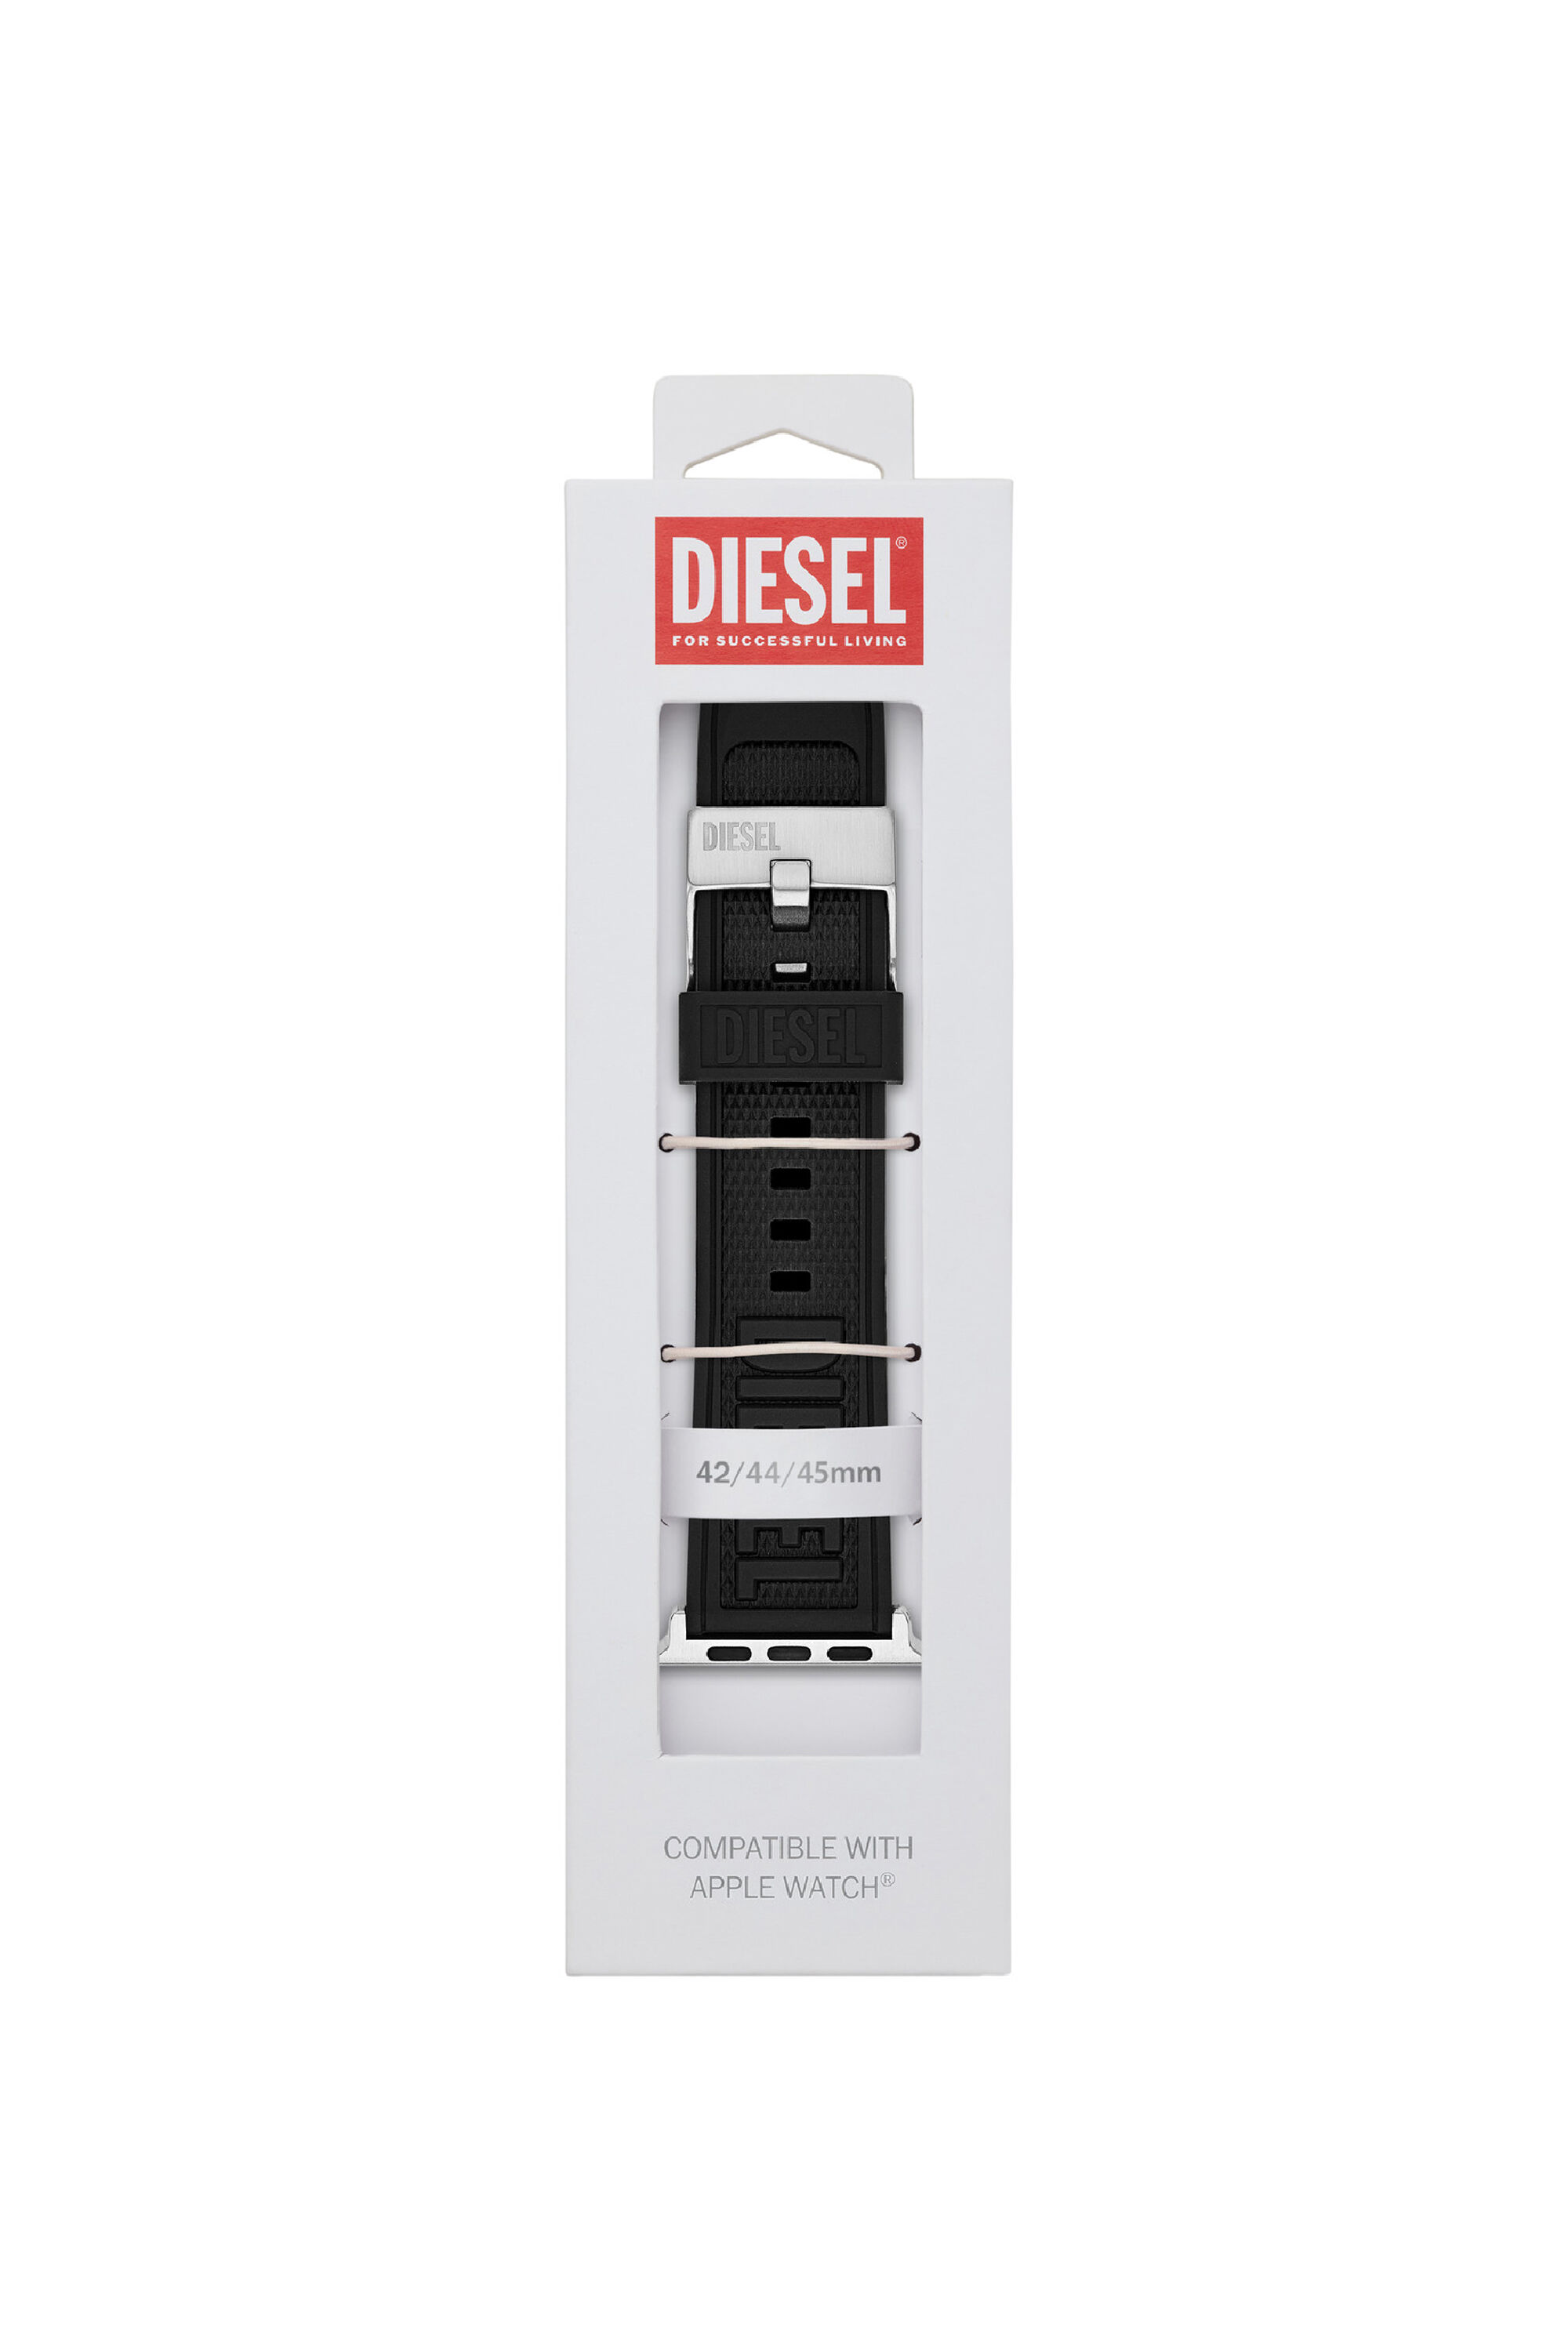 Diesel - DSS0014, Schwarz - Image 2